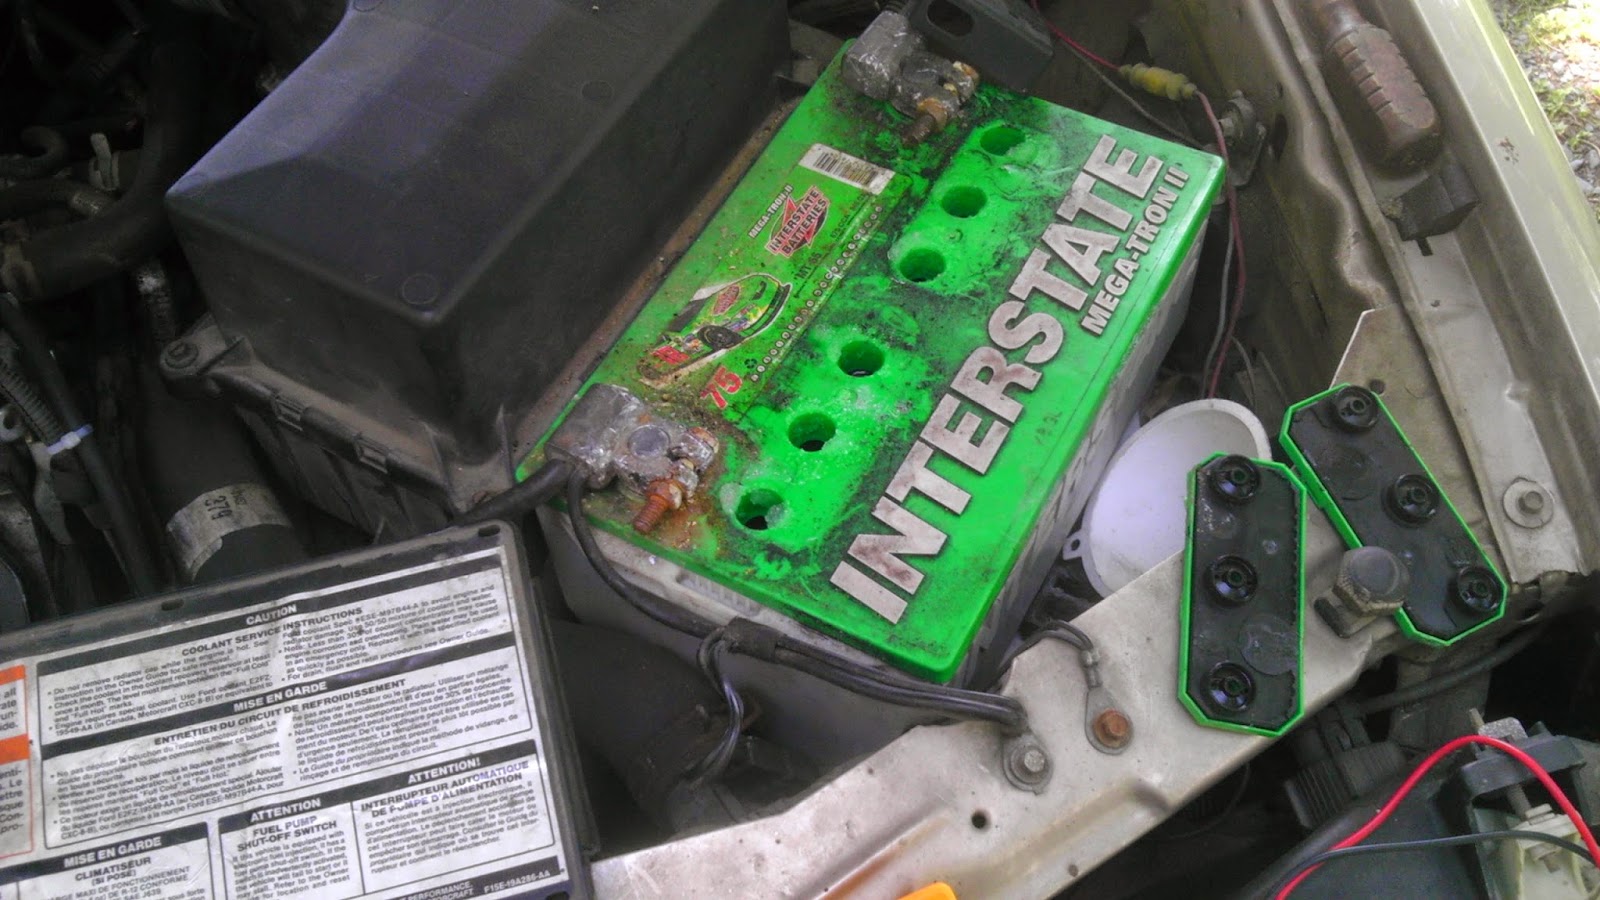 Rev'd Up: Dead Car Battery + Epsom Salt = Revived Battery?